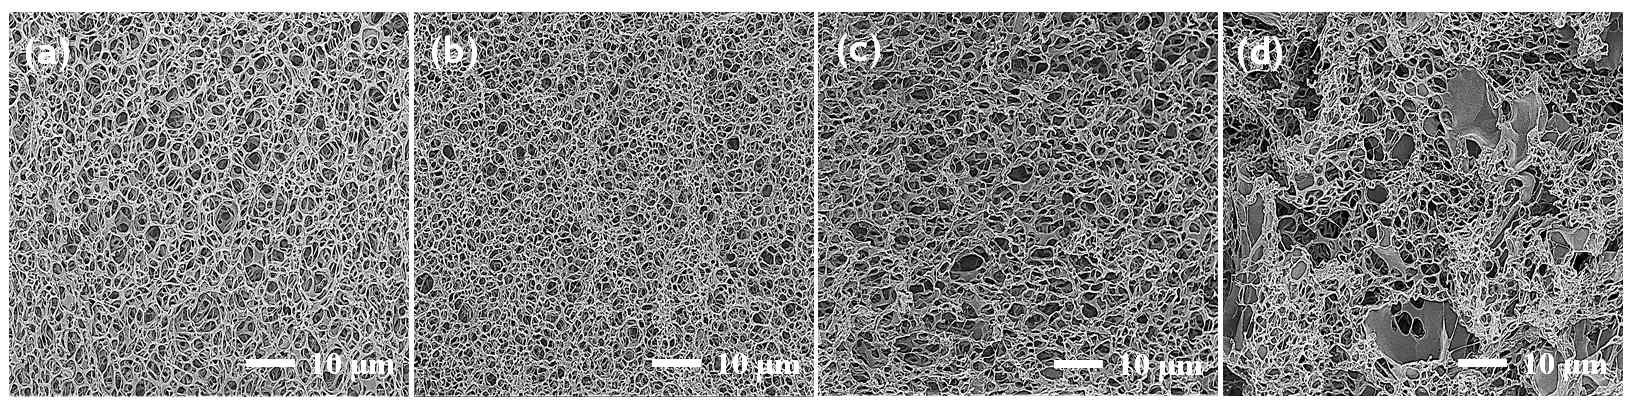 (a) 1, (b) 10, (c) 20, (d) 60 wt% TCNC/PI foam 단면의 주사전자현미경 사진